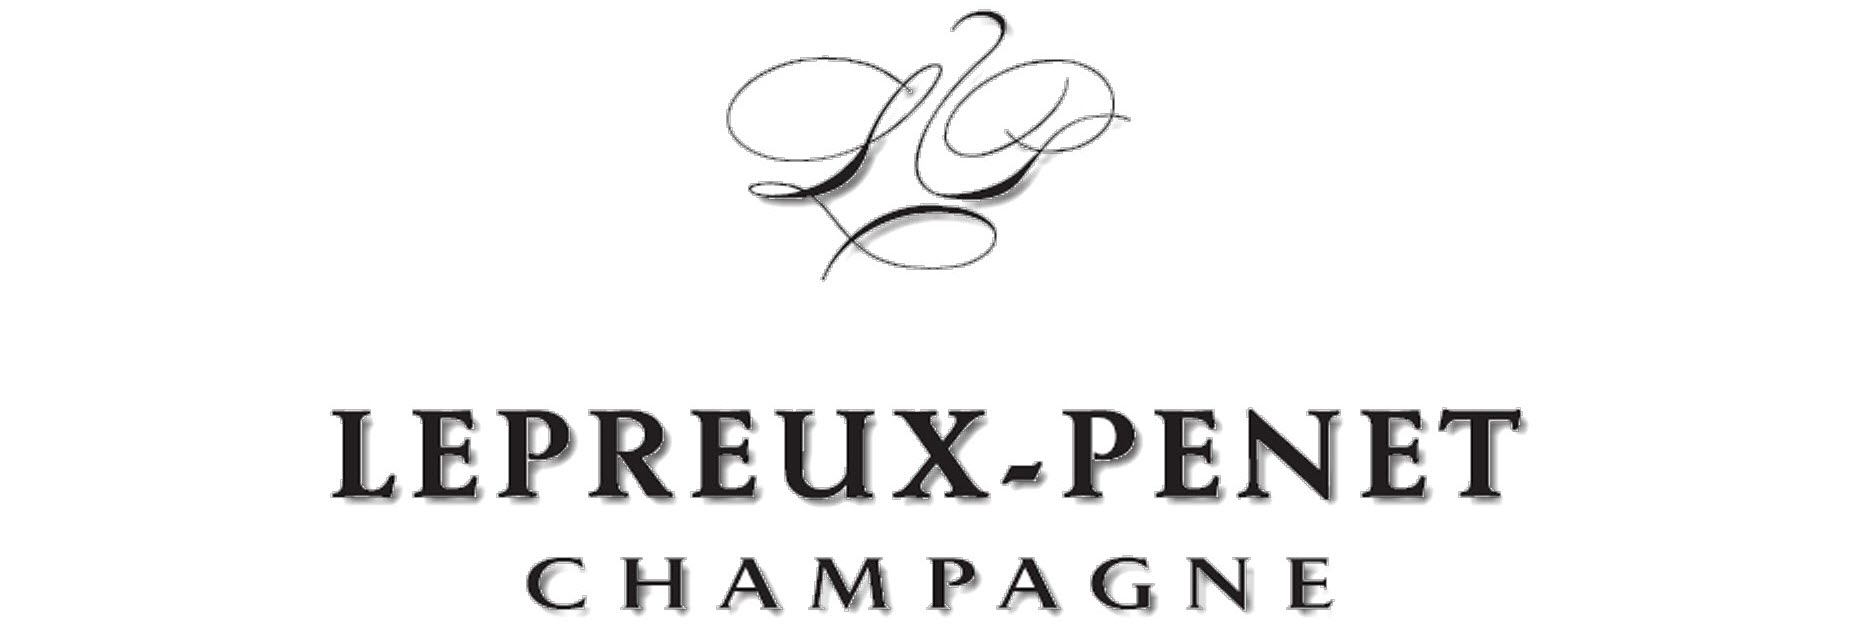 Champagne Lepreux-Penet